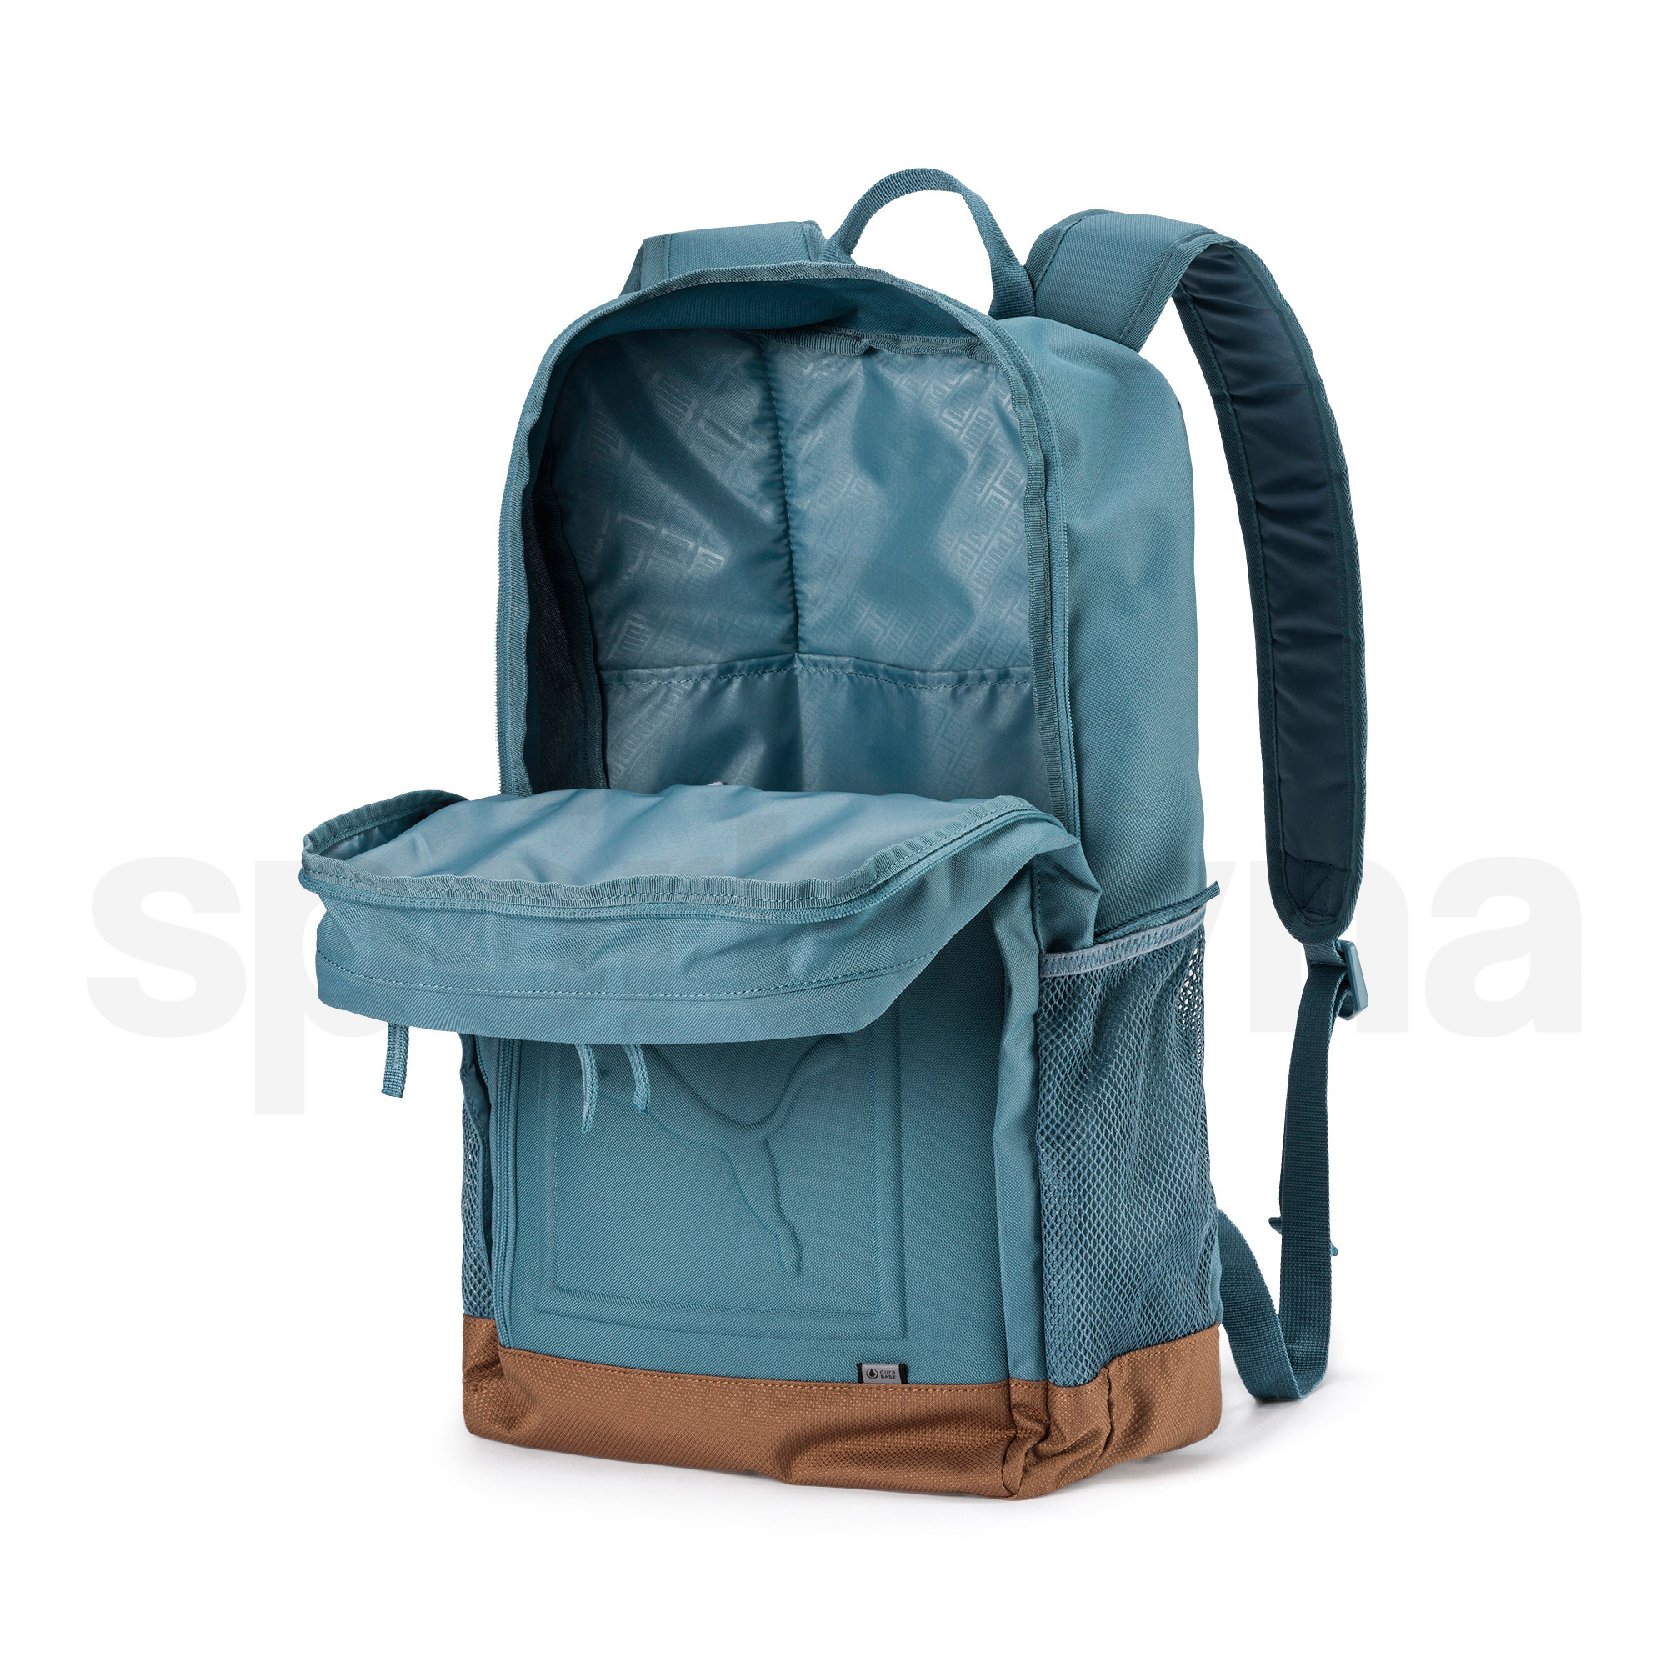 Batoh Puma S Backpack - modrá/hnědá